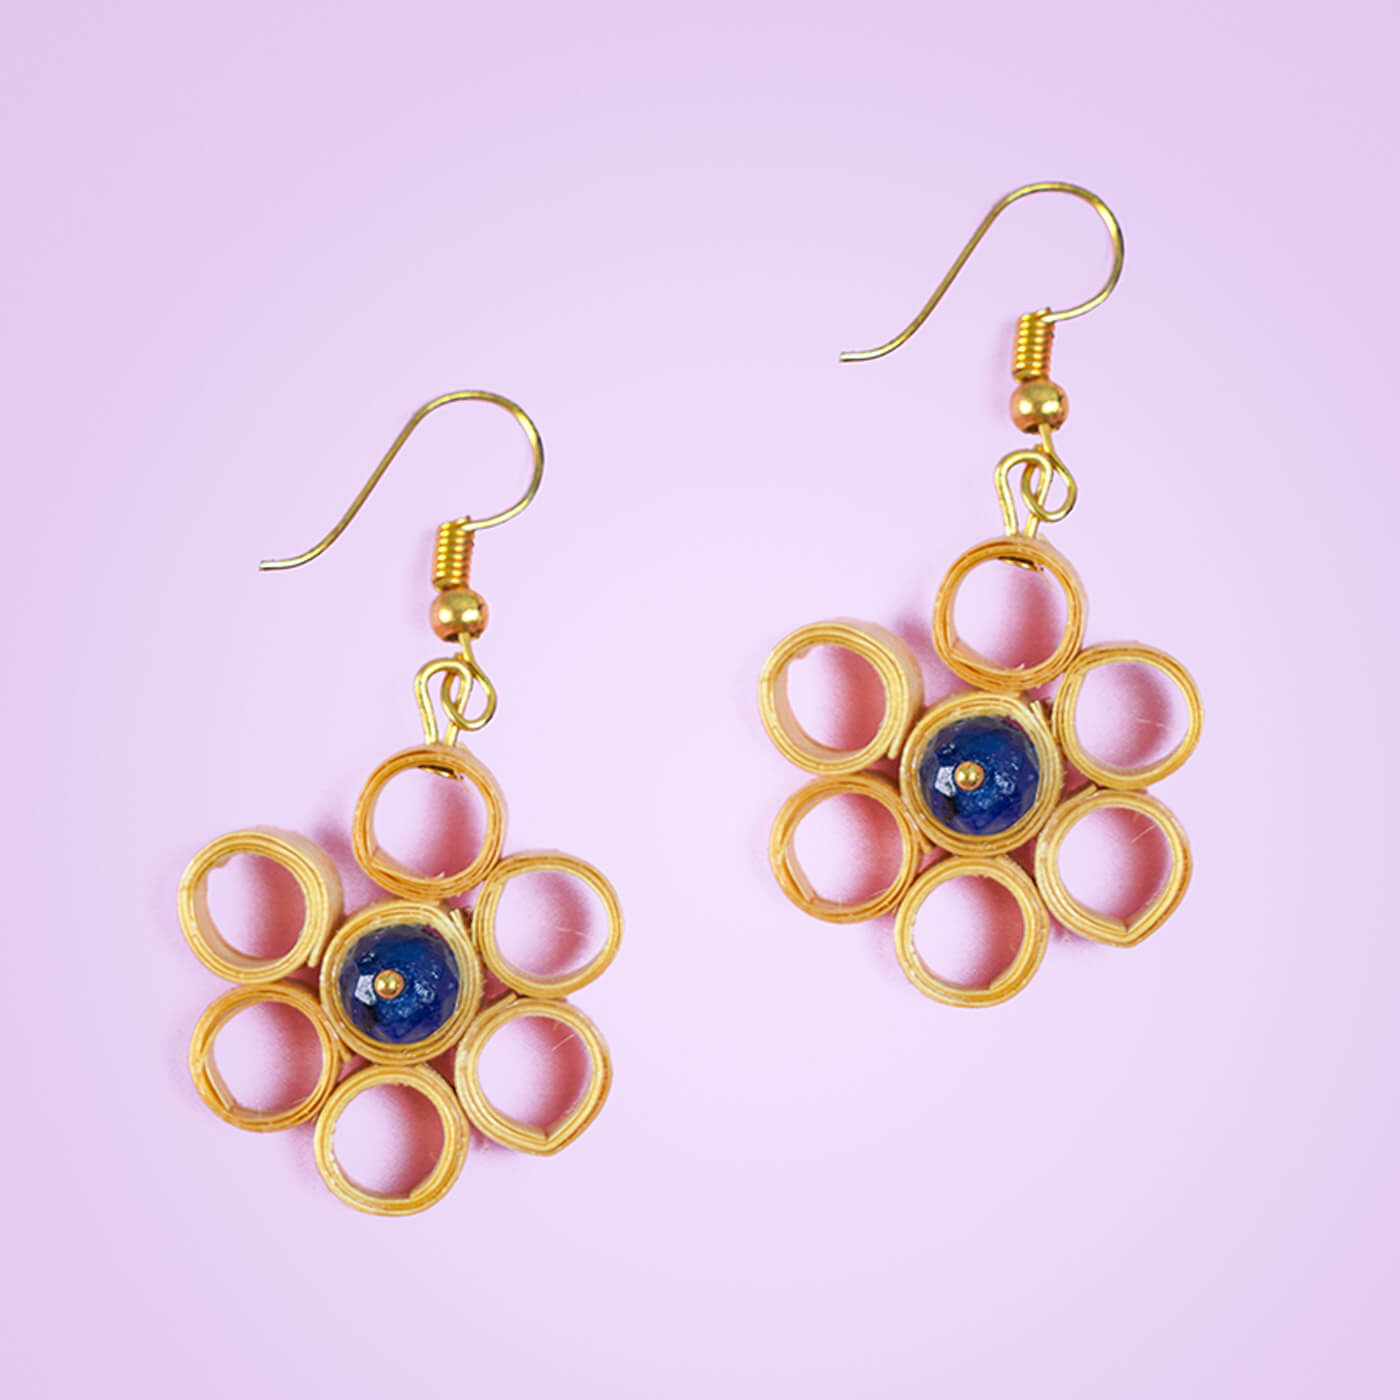 Buy Flower Stud Earring, Small Flower Shaped Earrings, Dainty Gold Stud  Earrings, Online in India - Etsy